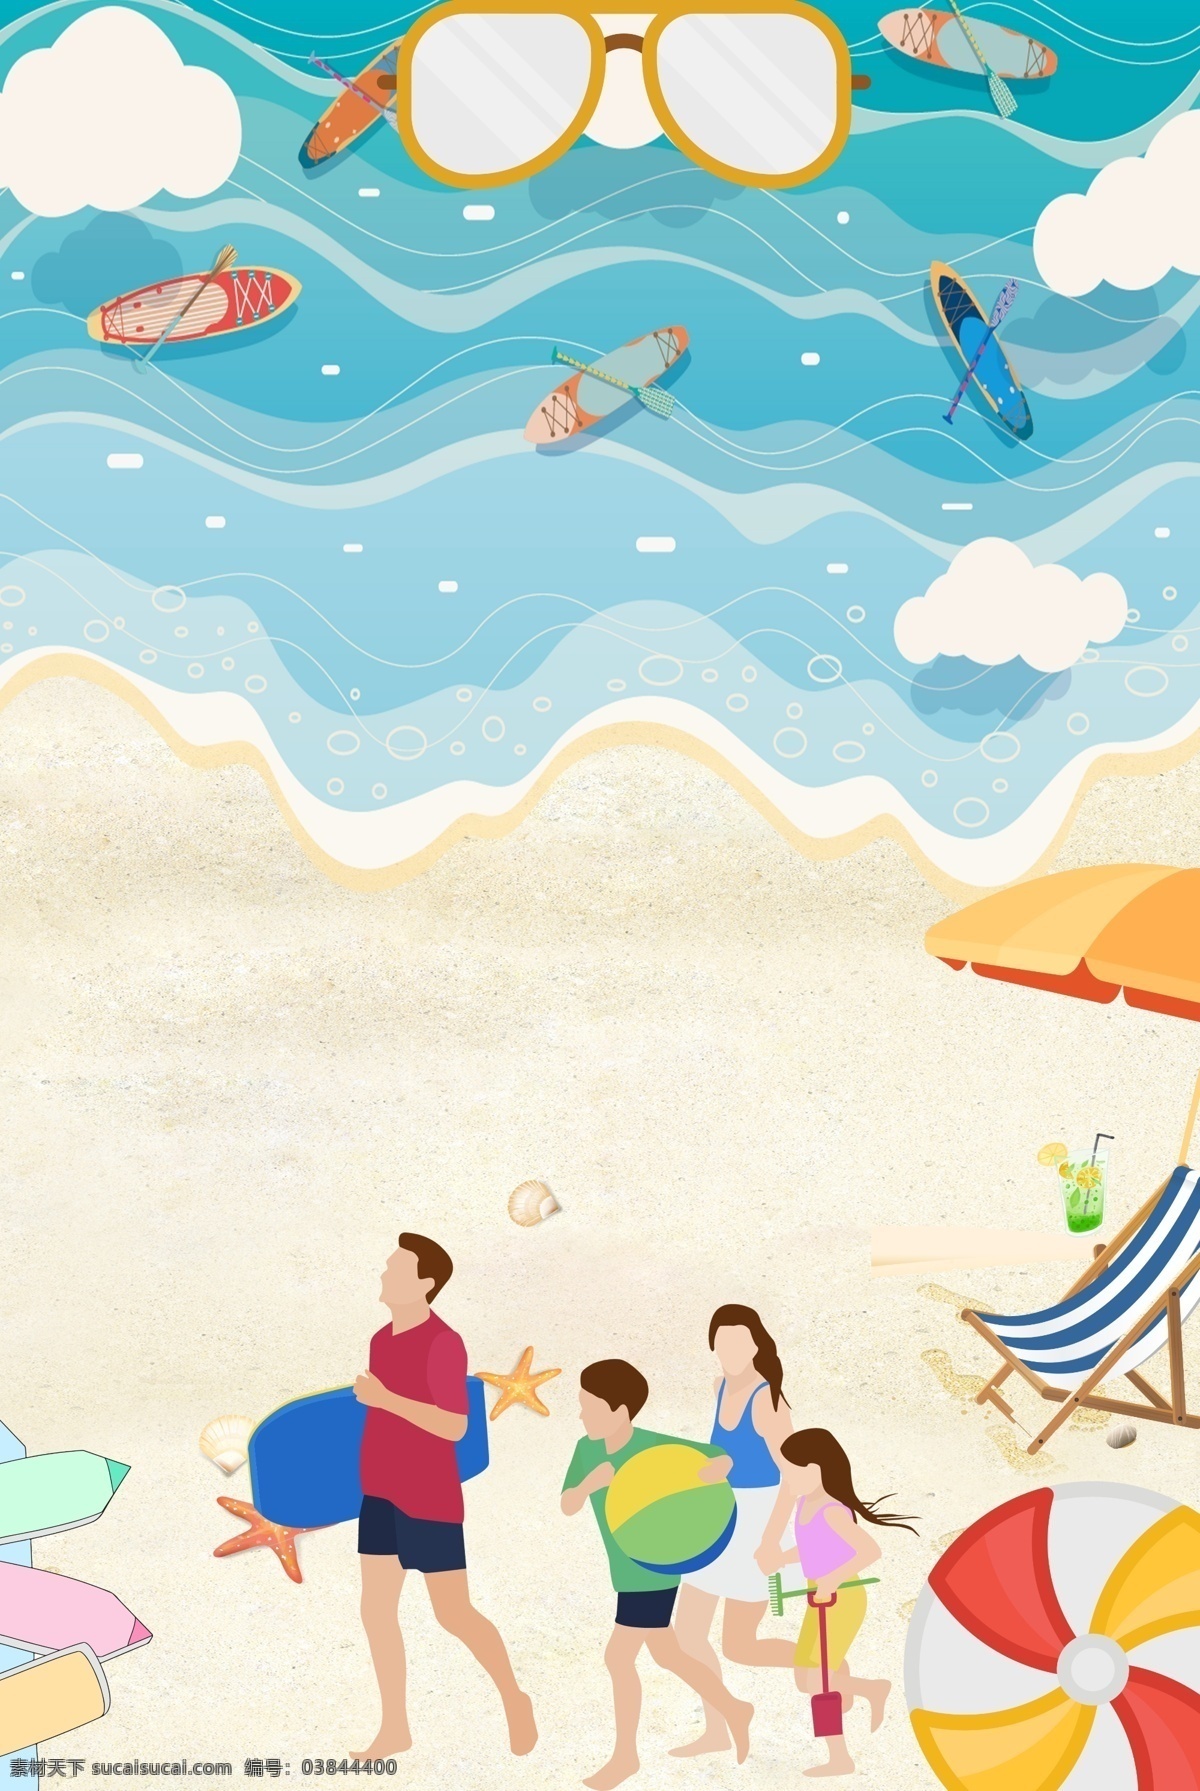 卡通 简约 风格 蓝色 清凉 广告 背景 沙滩 小船 凉快 海边